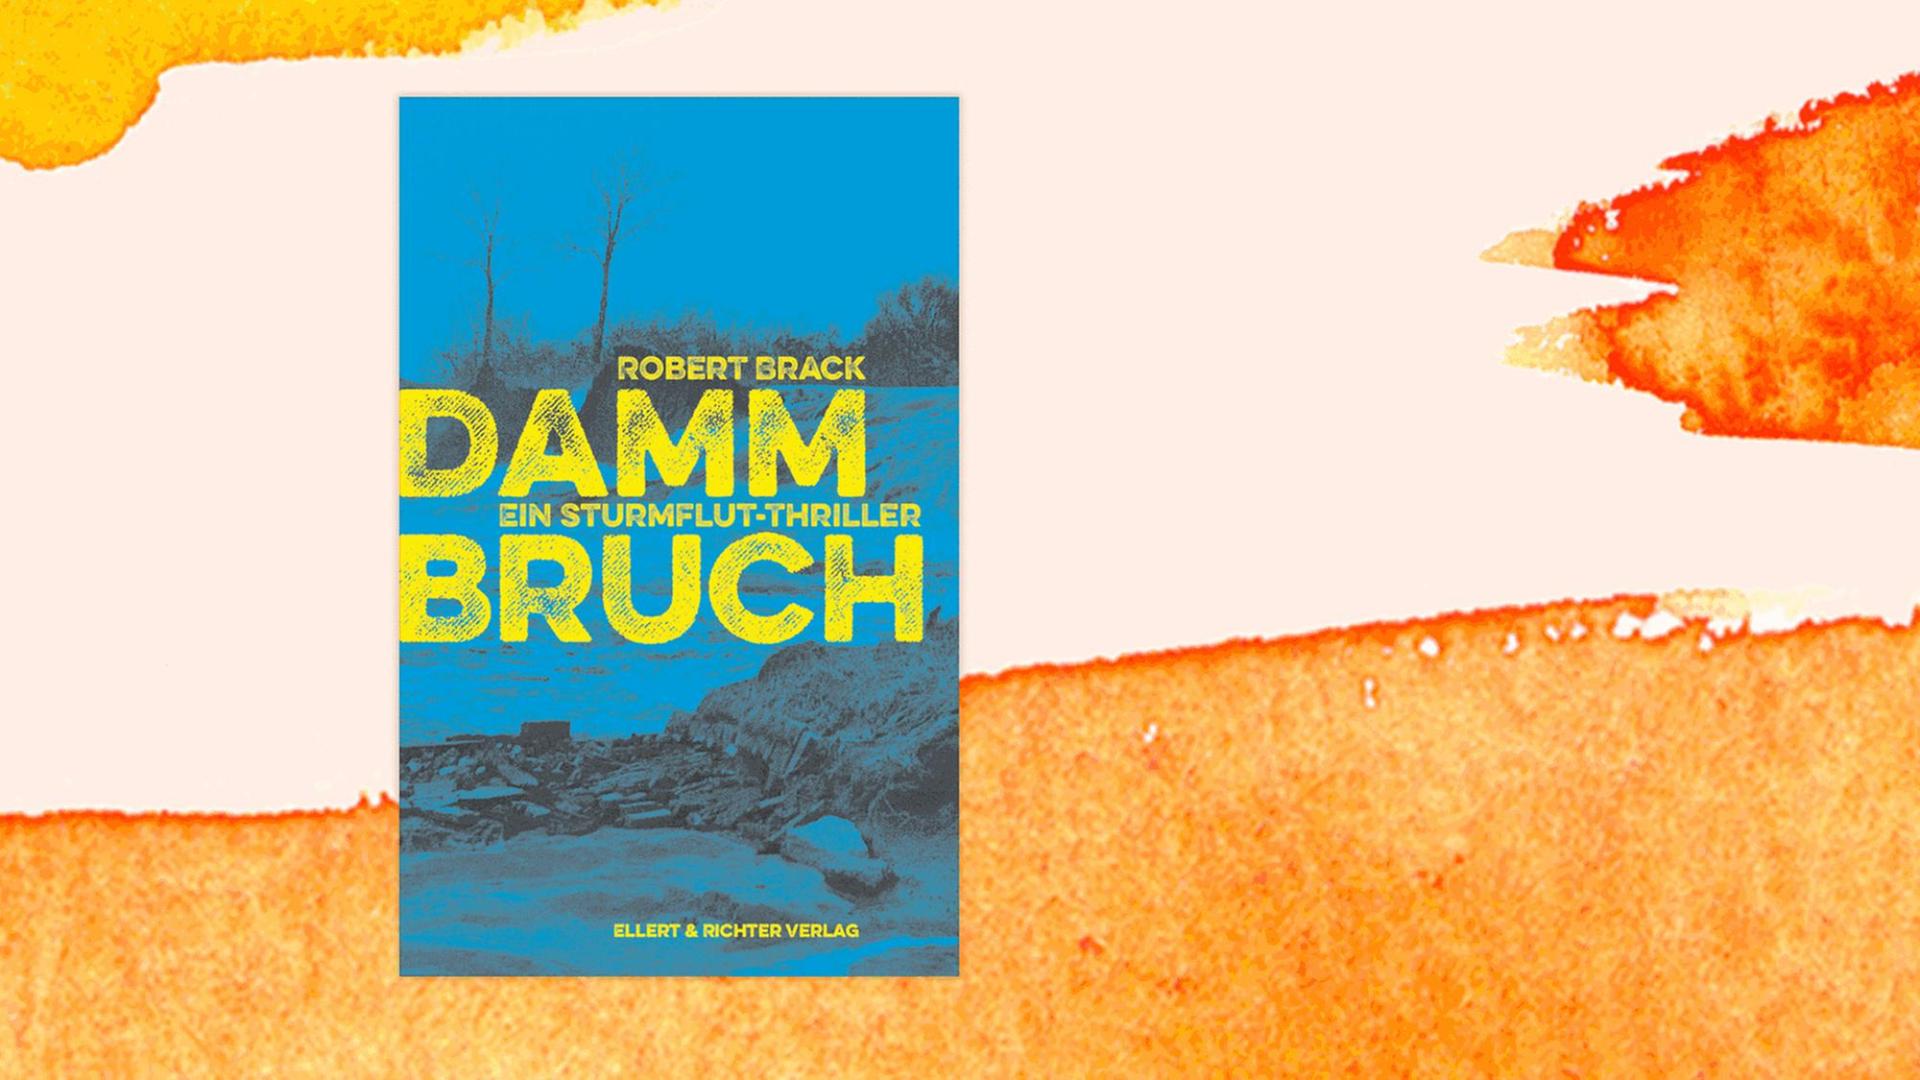 Cover des Krimis "Dammbruch" von Robert Brack.